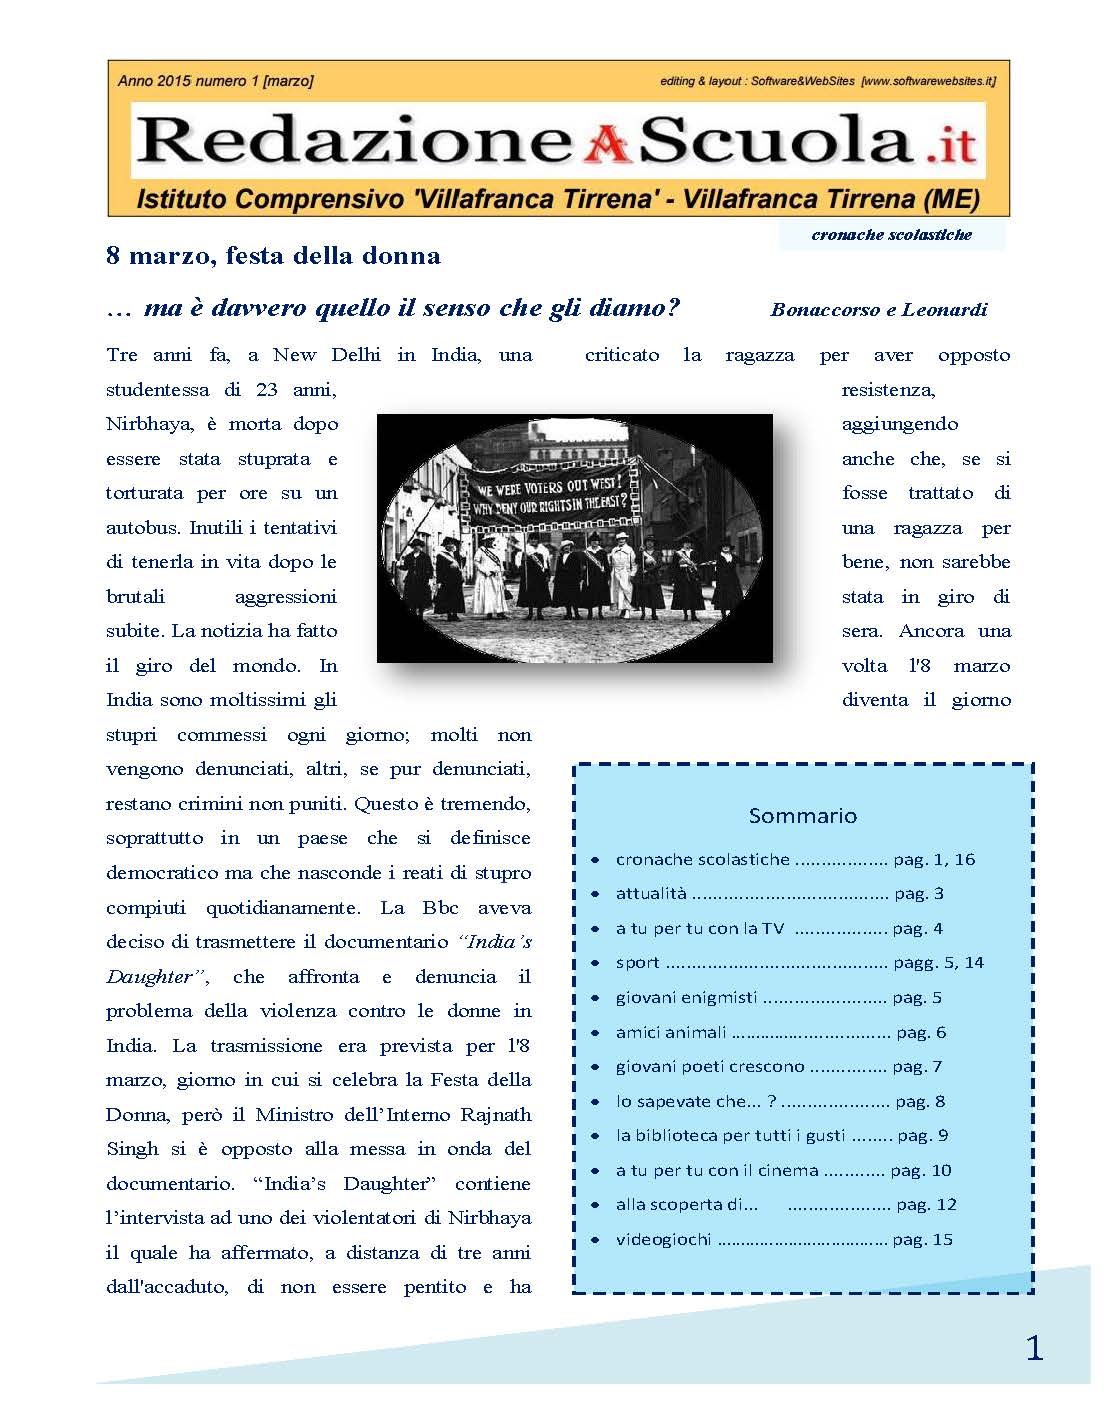 RedazioneAScuola.it Edizione 01 a.s. 2014-2015